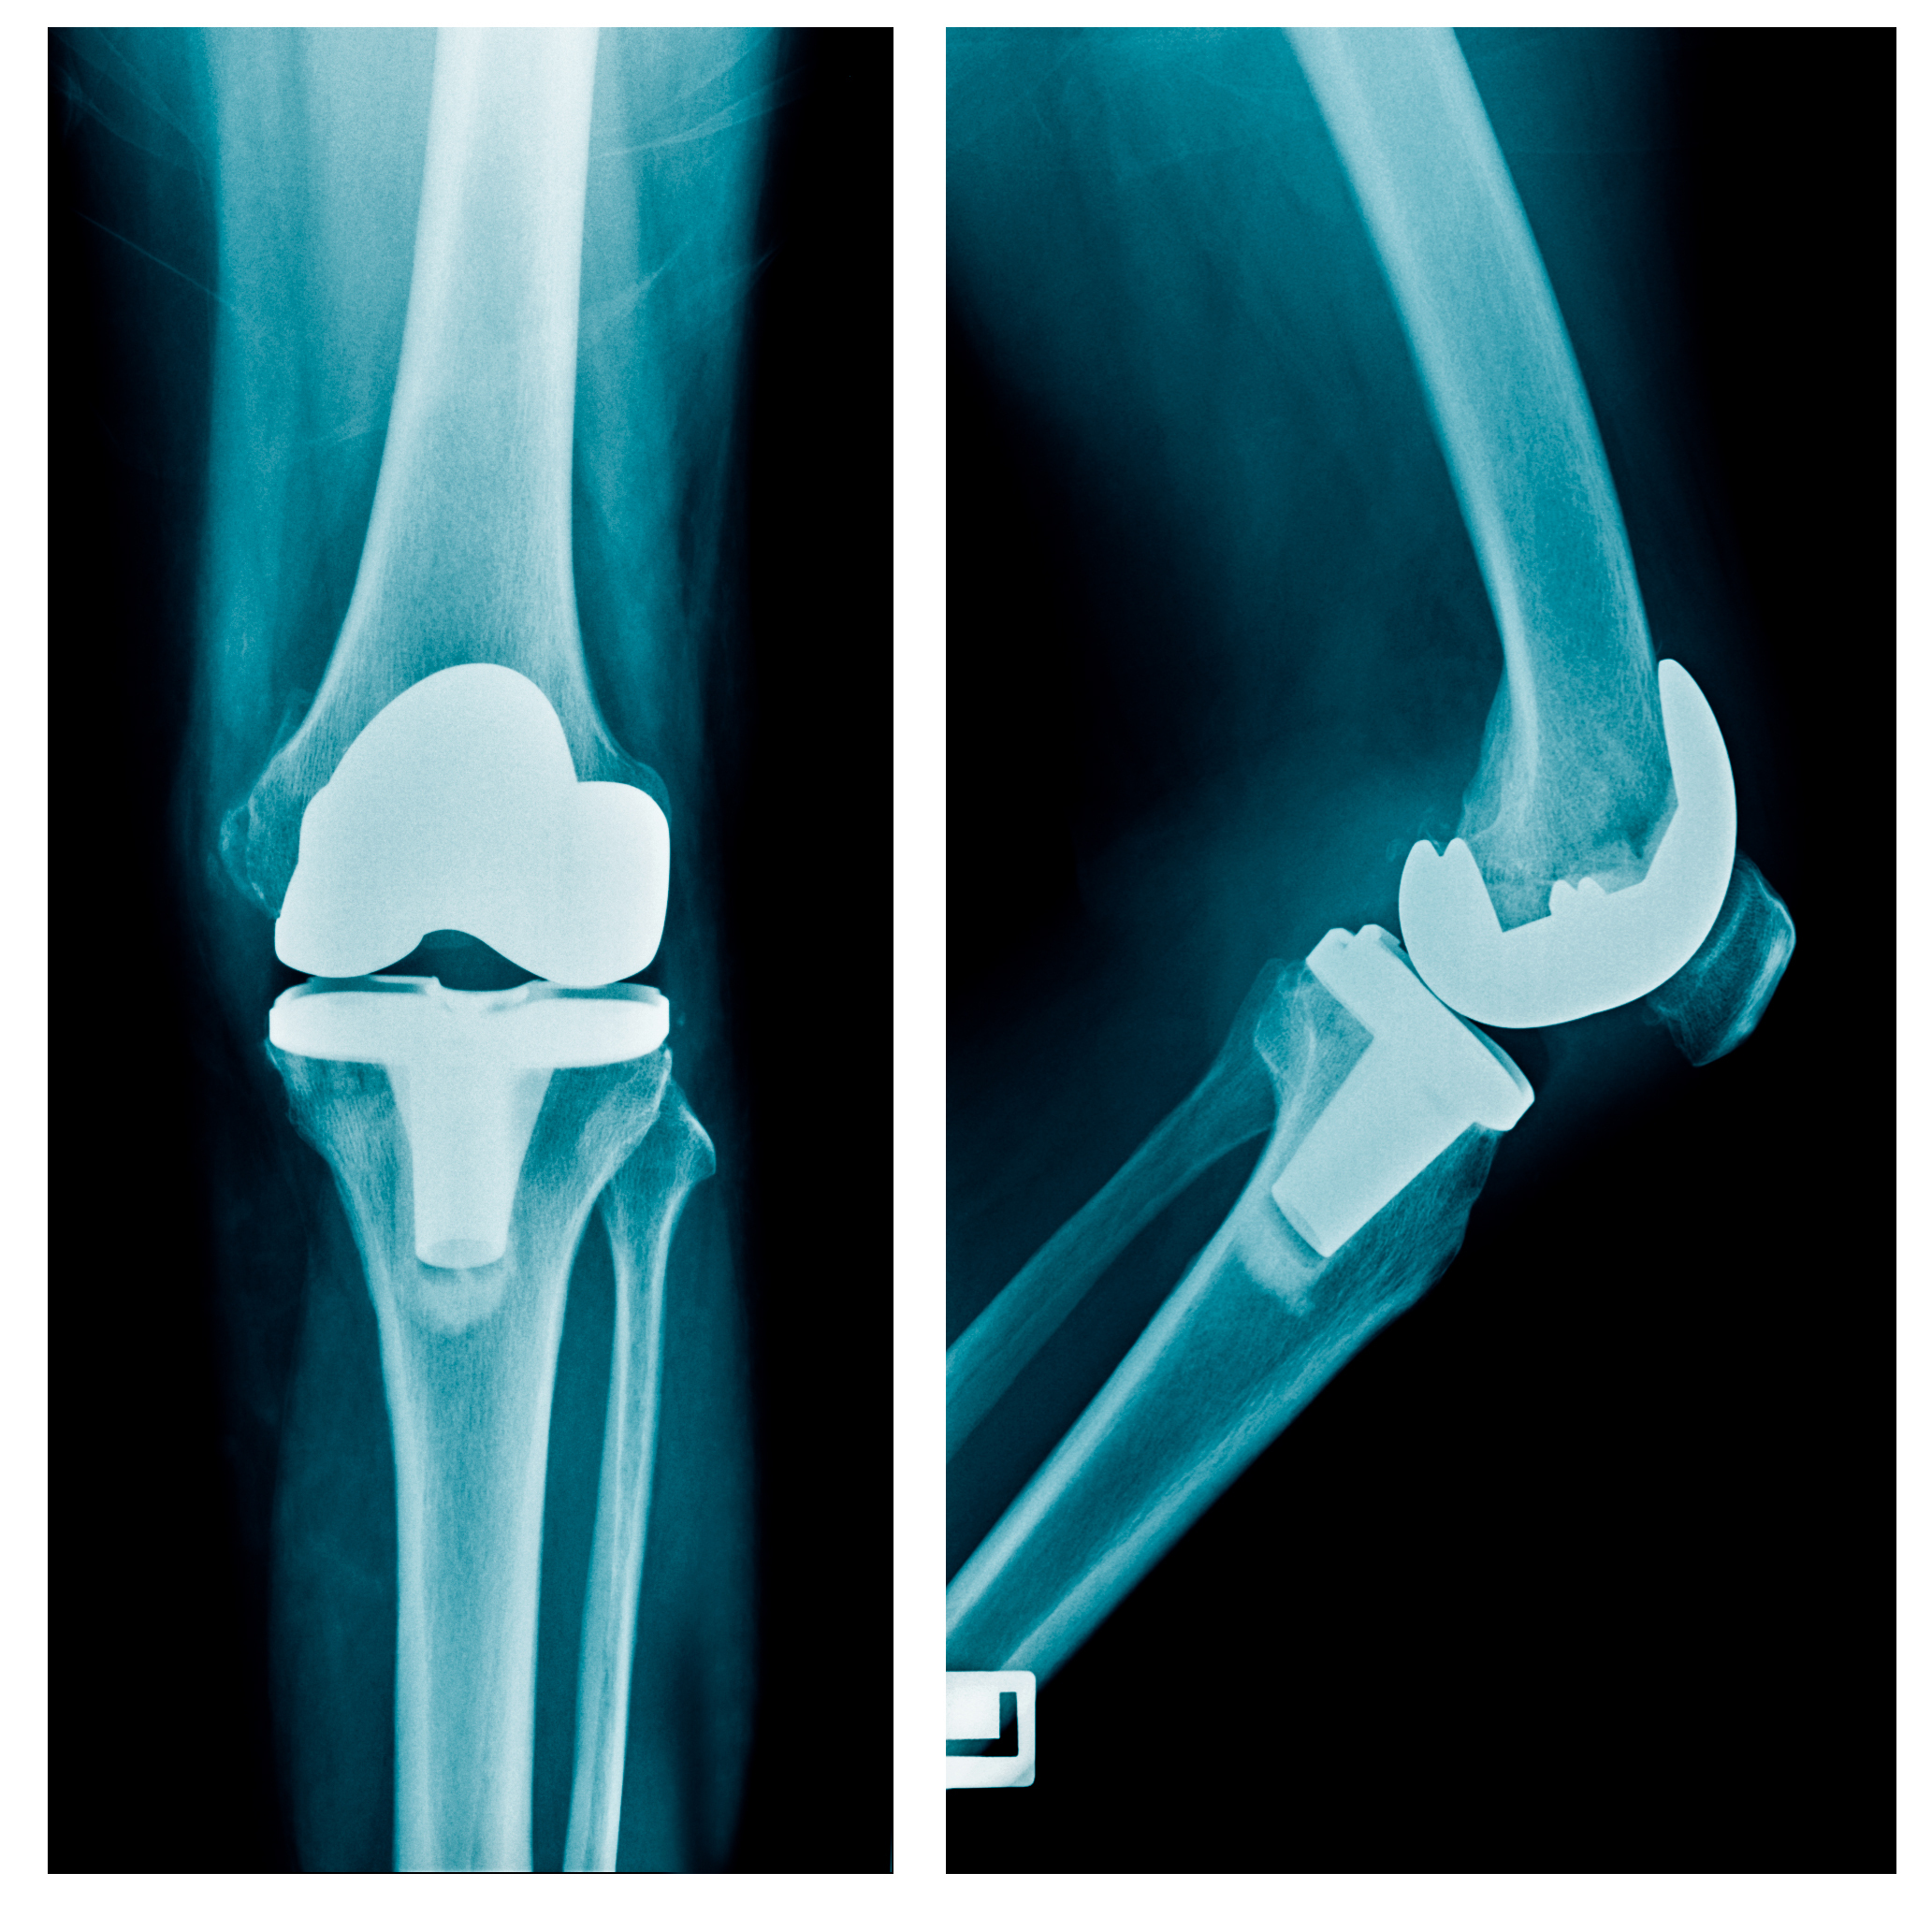 Эндопротезирование коленного сустава клиника. Рентген эндопротеза коленного сустава. Рентген эндопротеза тазобедренного сустава. Артропластика коленного сустава. Эндопротезирование коленного Stryker.